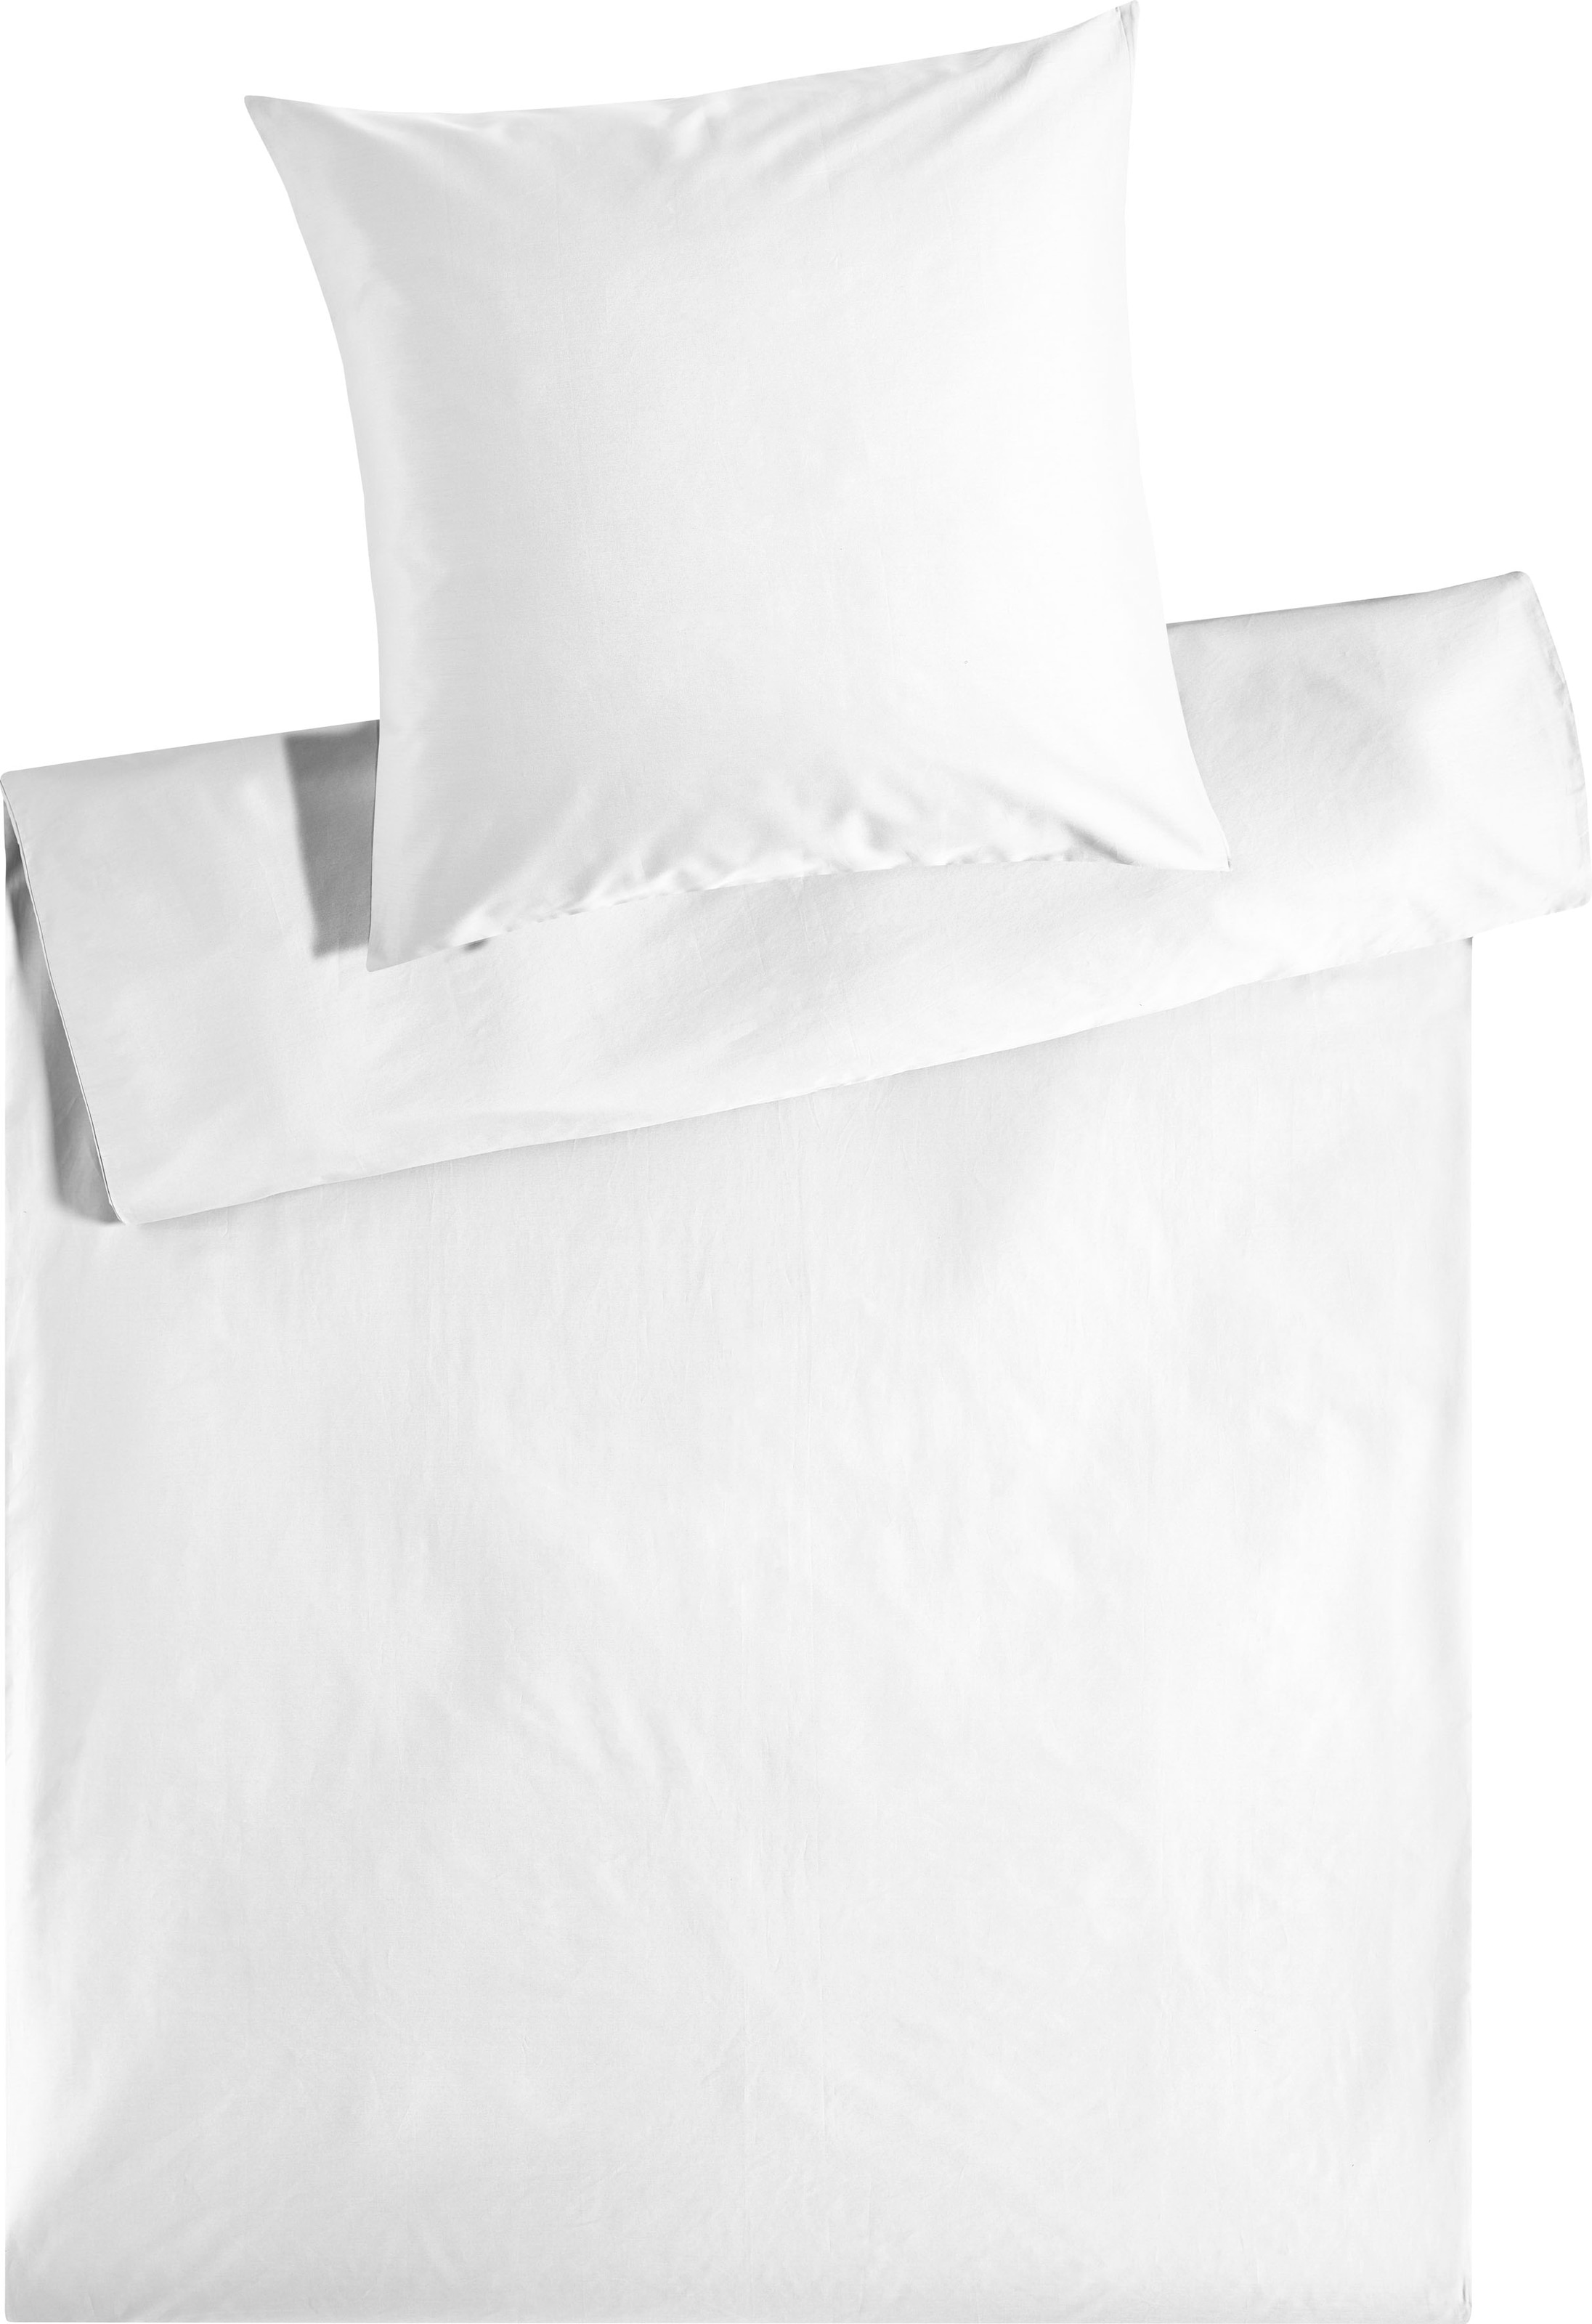 Kneer Bettwäsche »Edel-Satin Uni in 135x200, 155x220 oder 200x200 cm«, (3 tlg.), Bettwäsche aus Baumwolle in Satin-Qualität, unifarbene Bettwäsche